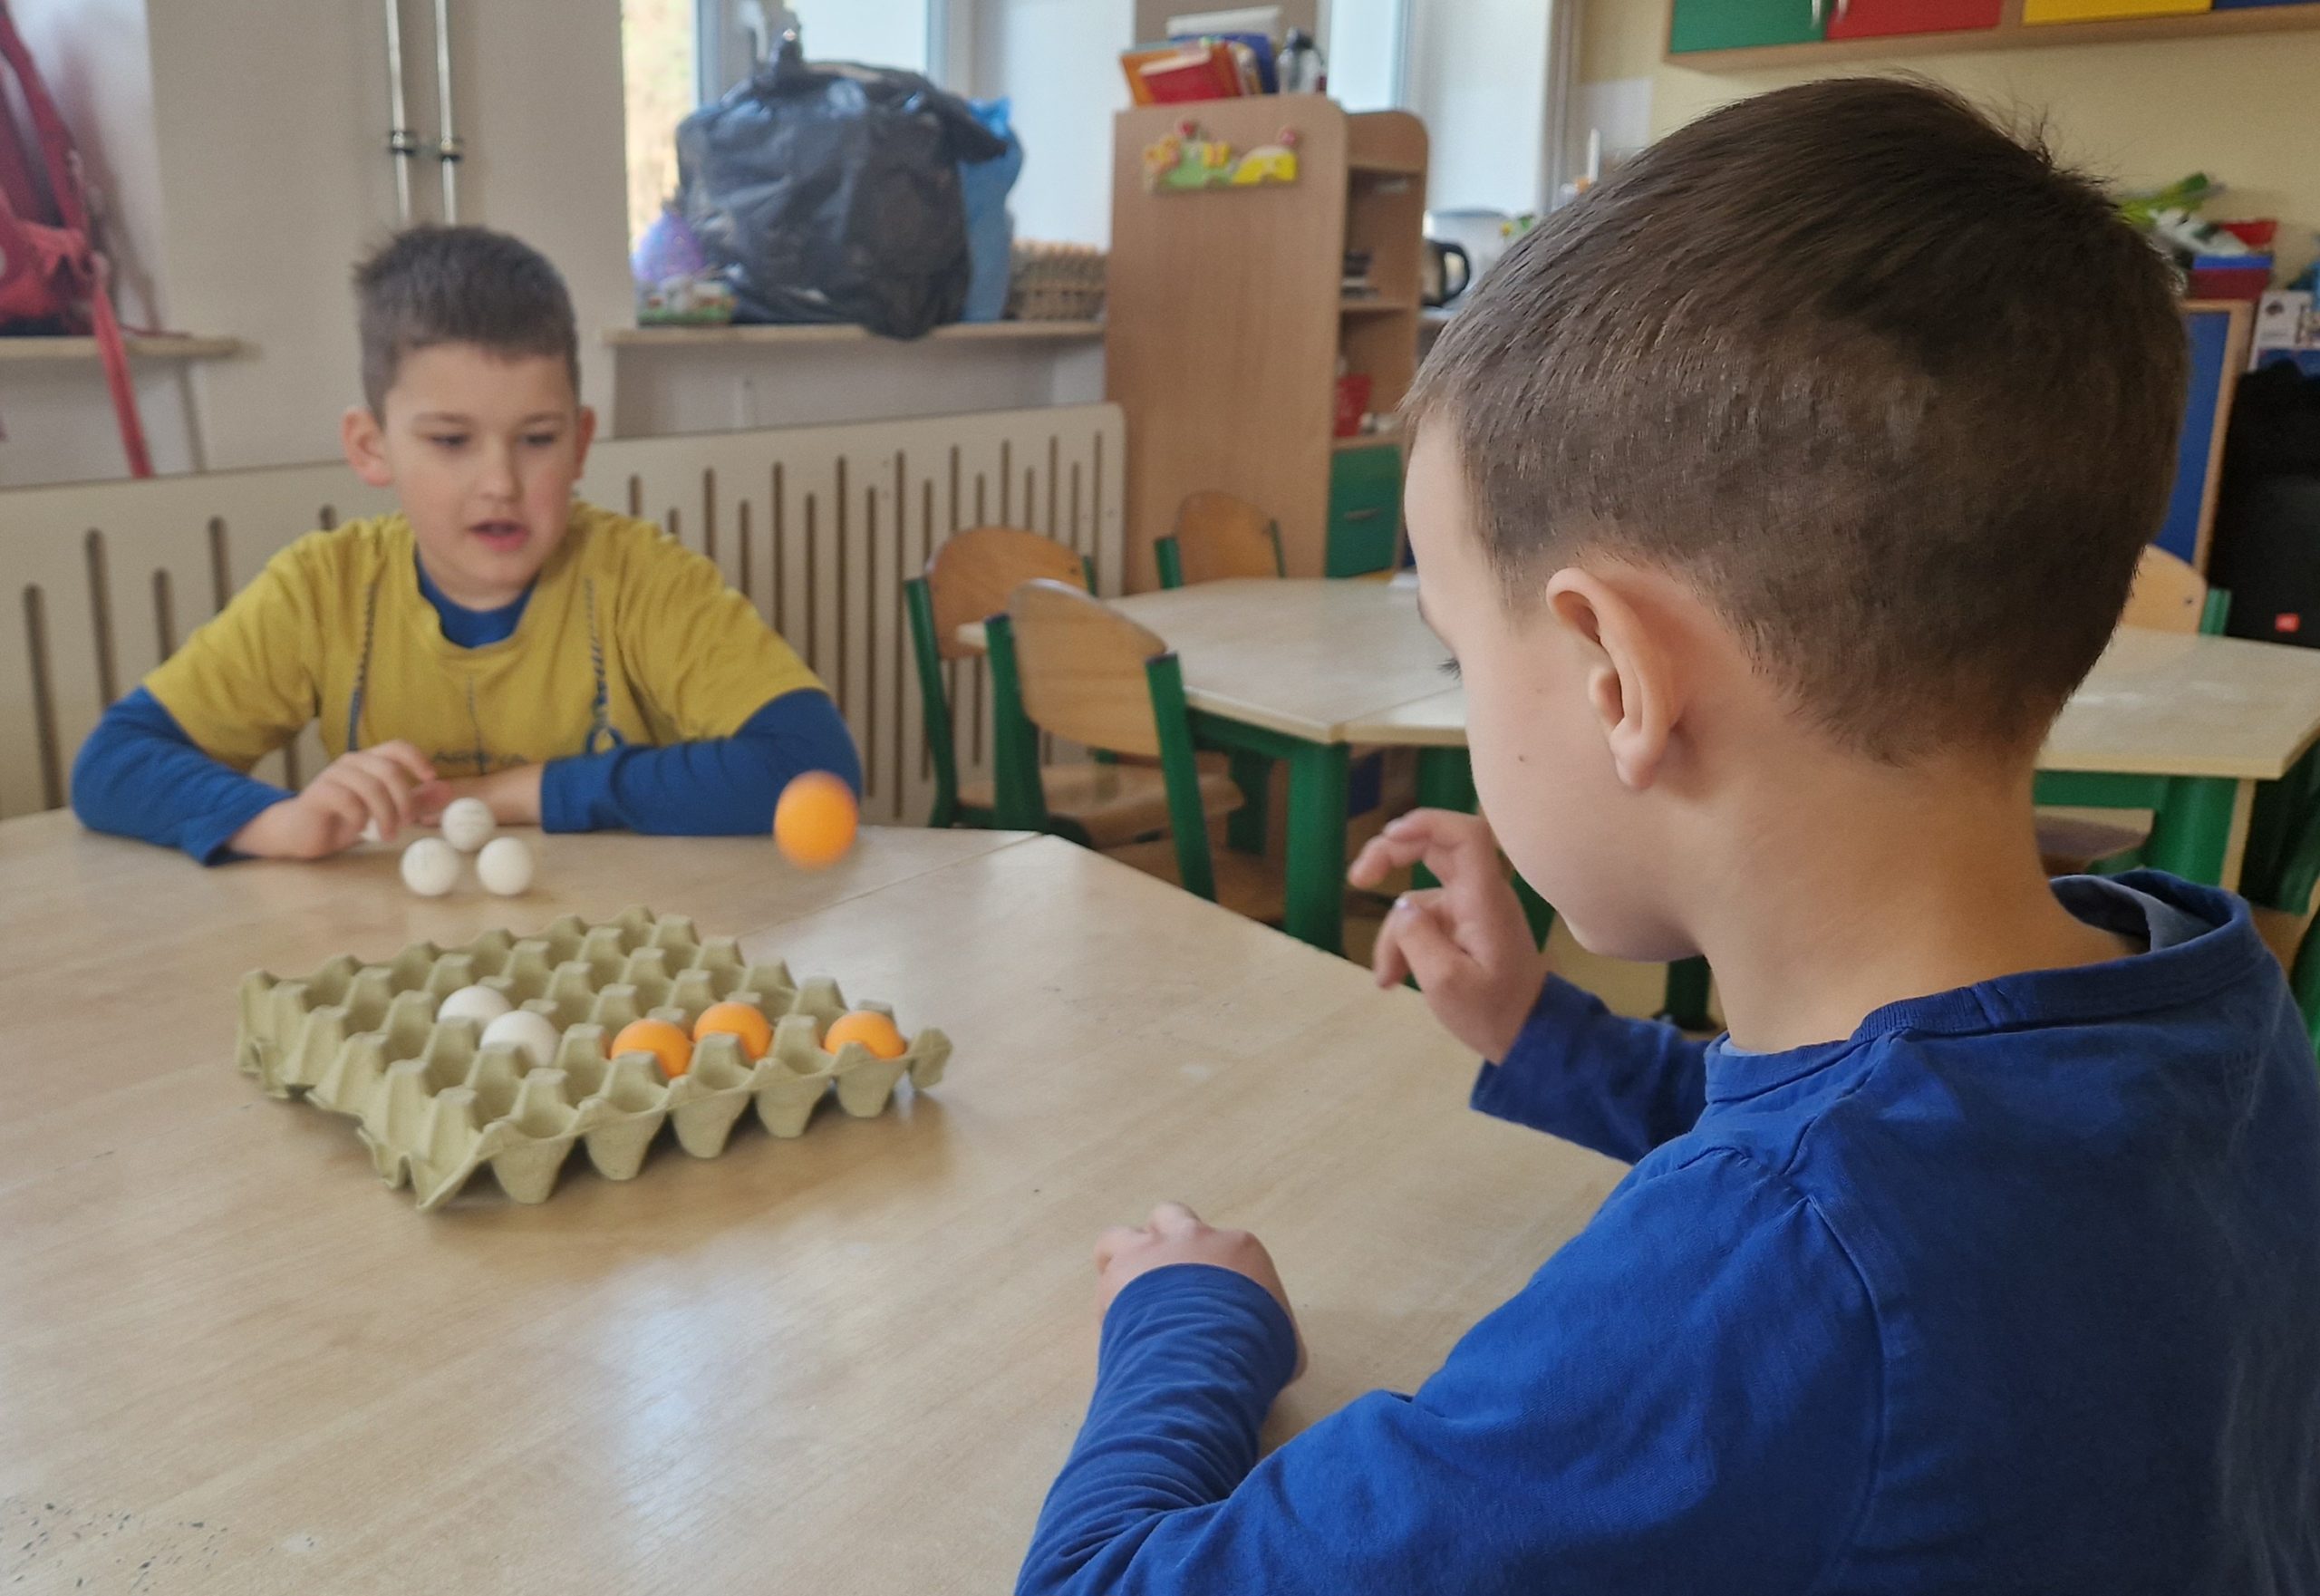 Przy stoliku siedzi 2 chłopców, rzucając piłeczkami do wytłaczanki po jajkach.